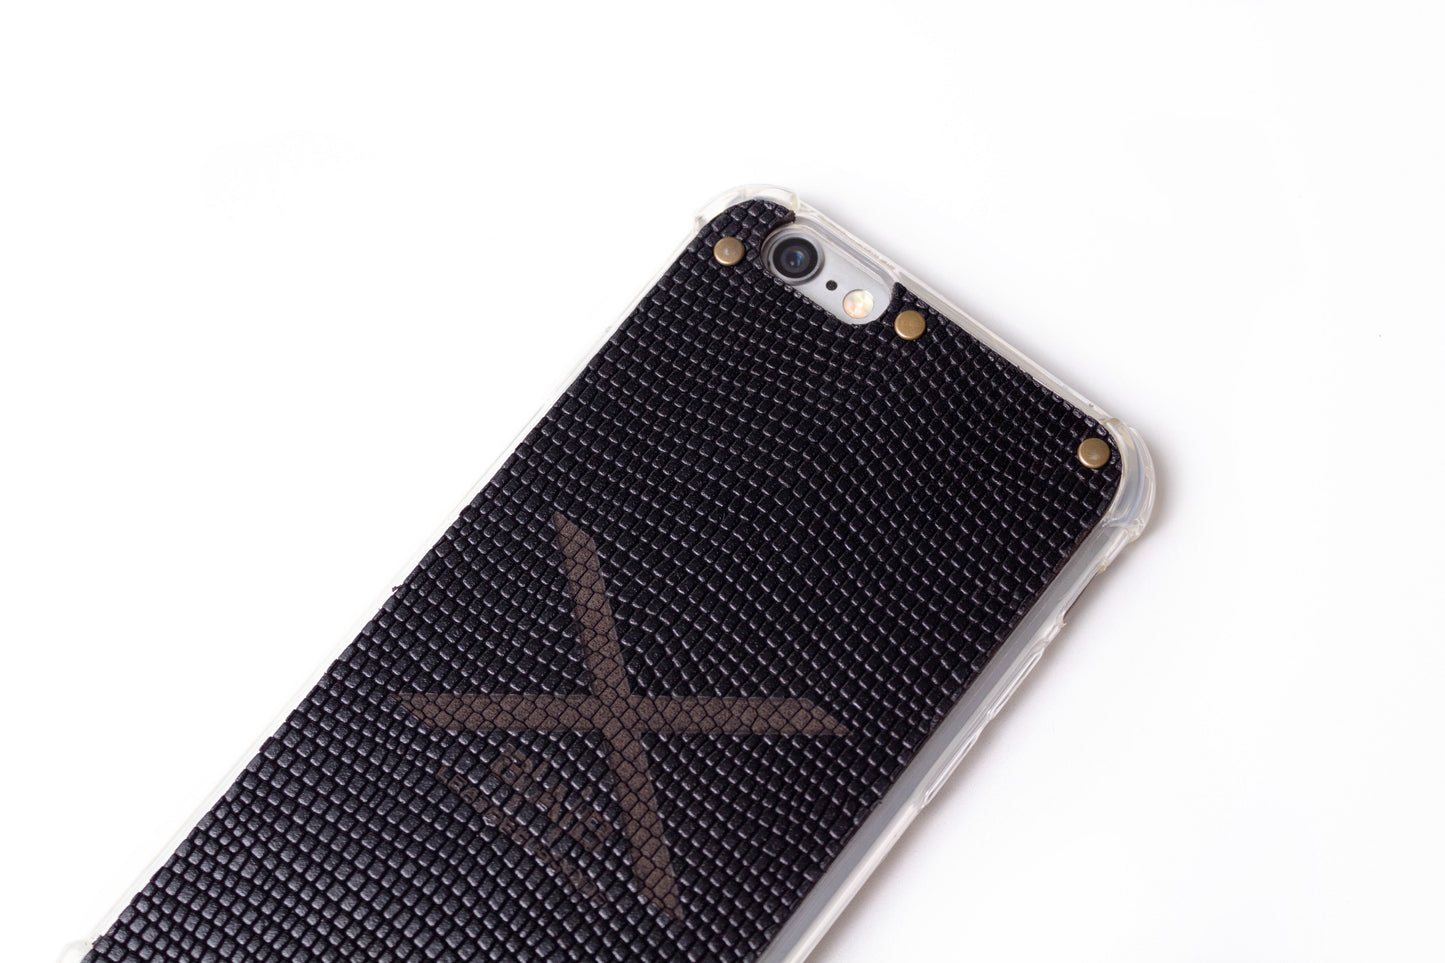 Capa para iPhone de Couro Genuíno Cobra Preta Texturizado cortado e gravado a laser, 5 Rebites de Bronze.- F036